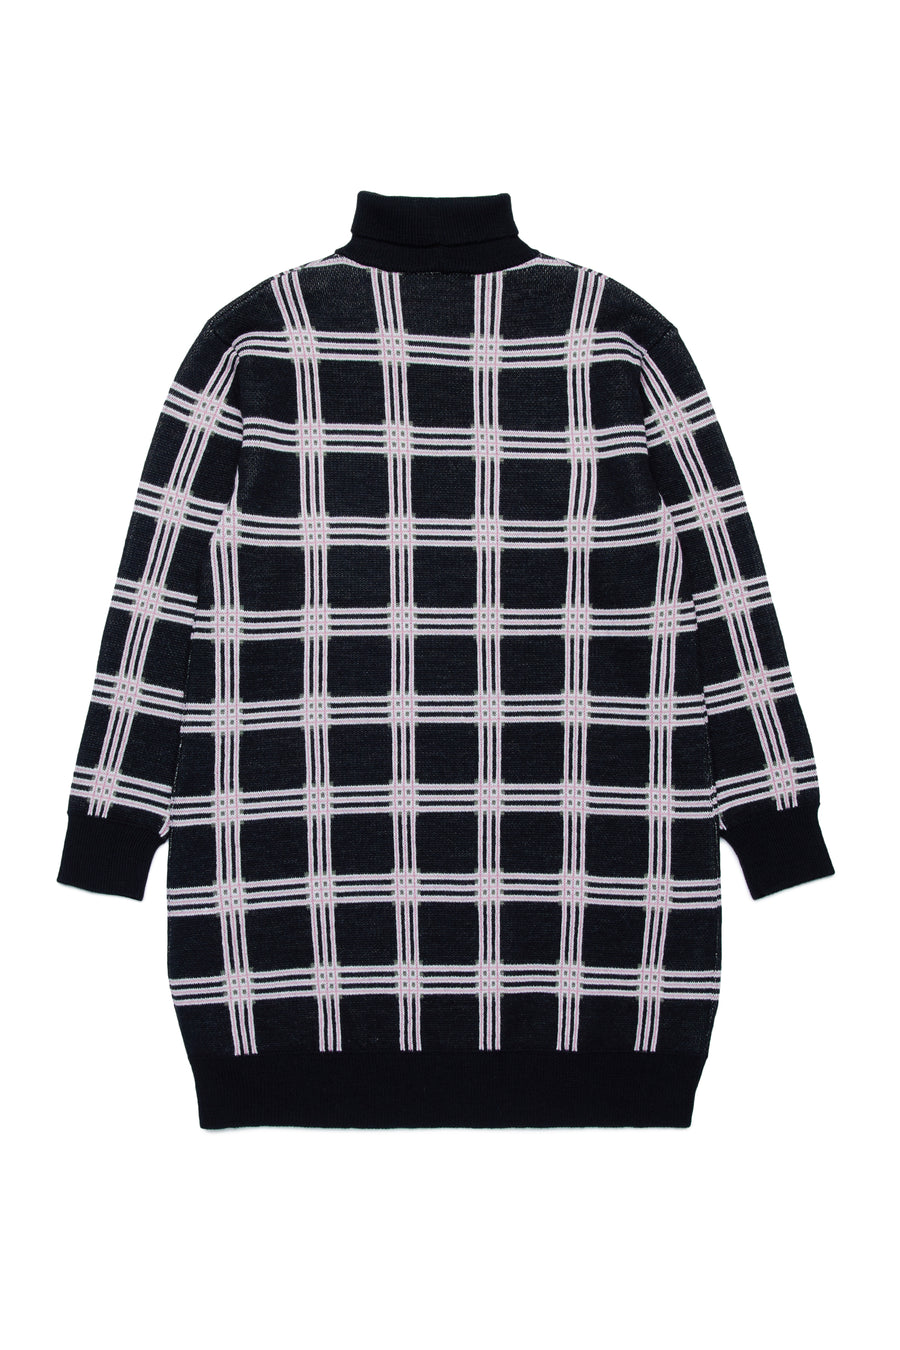 Checkered knit sweater dress by Marni